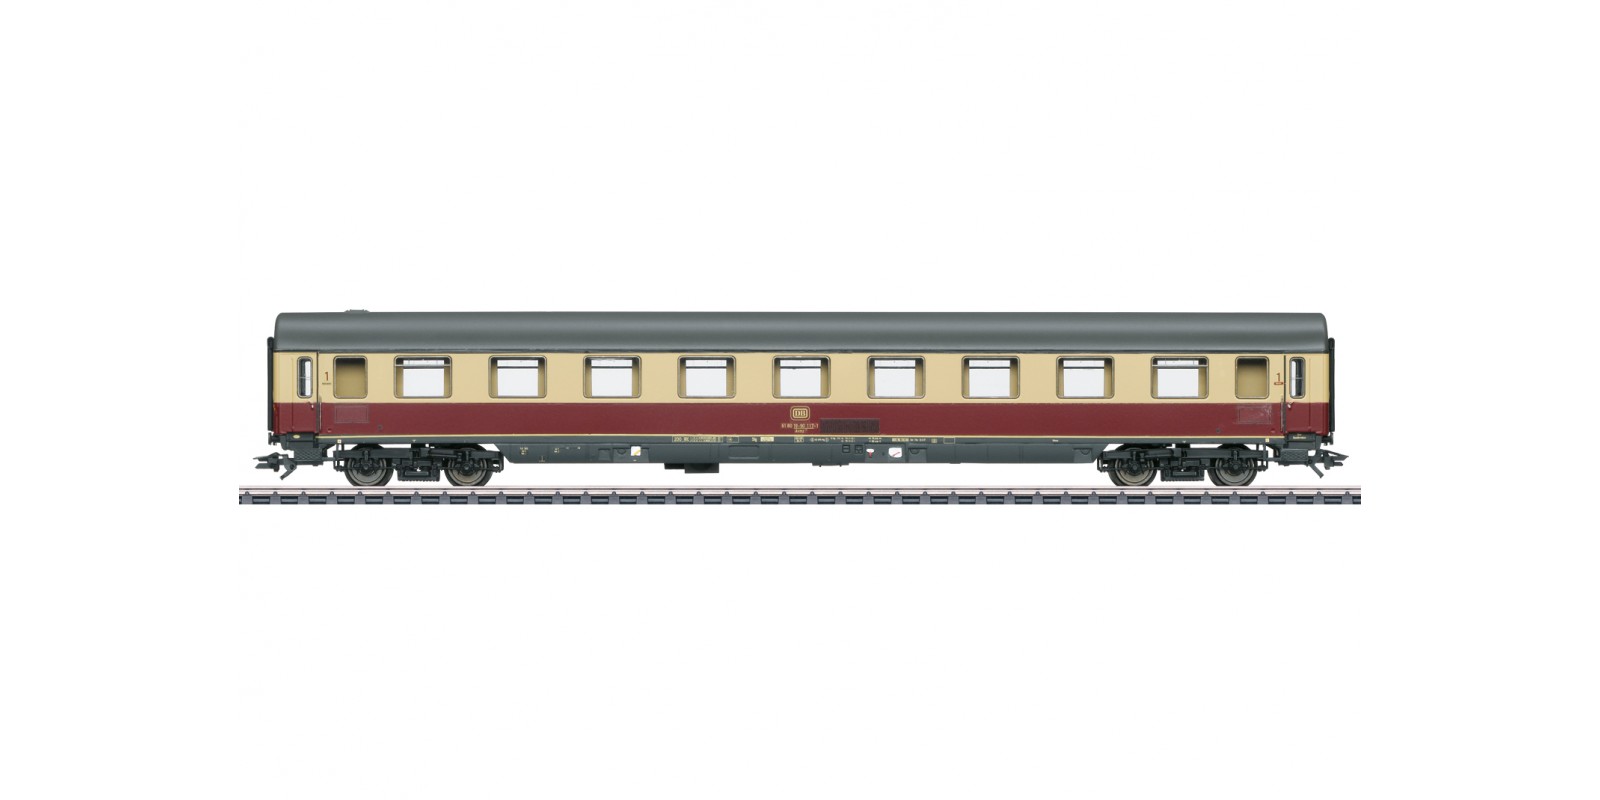 43852 Type Avmz 111 Express Passenger Car